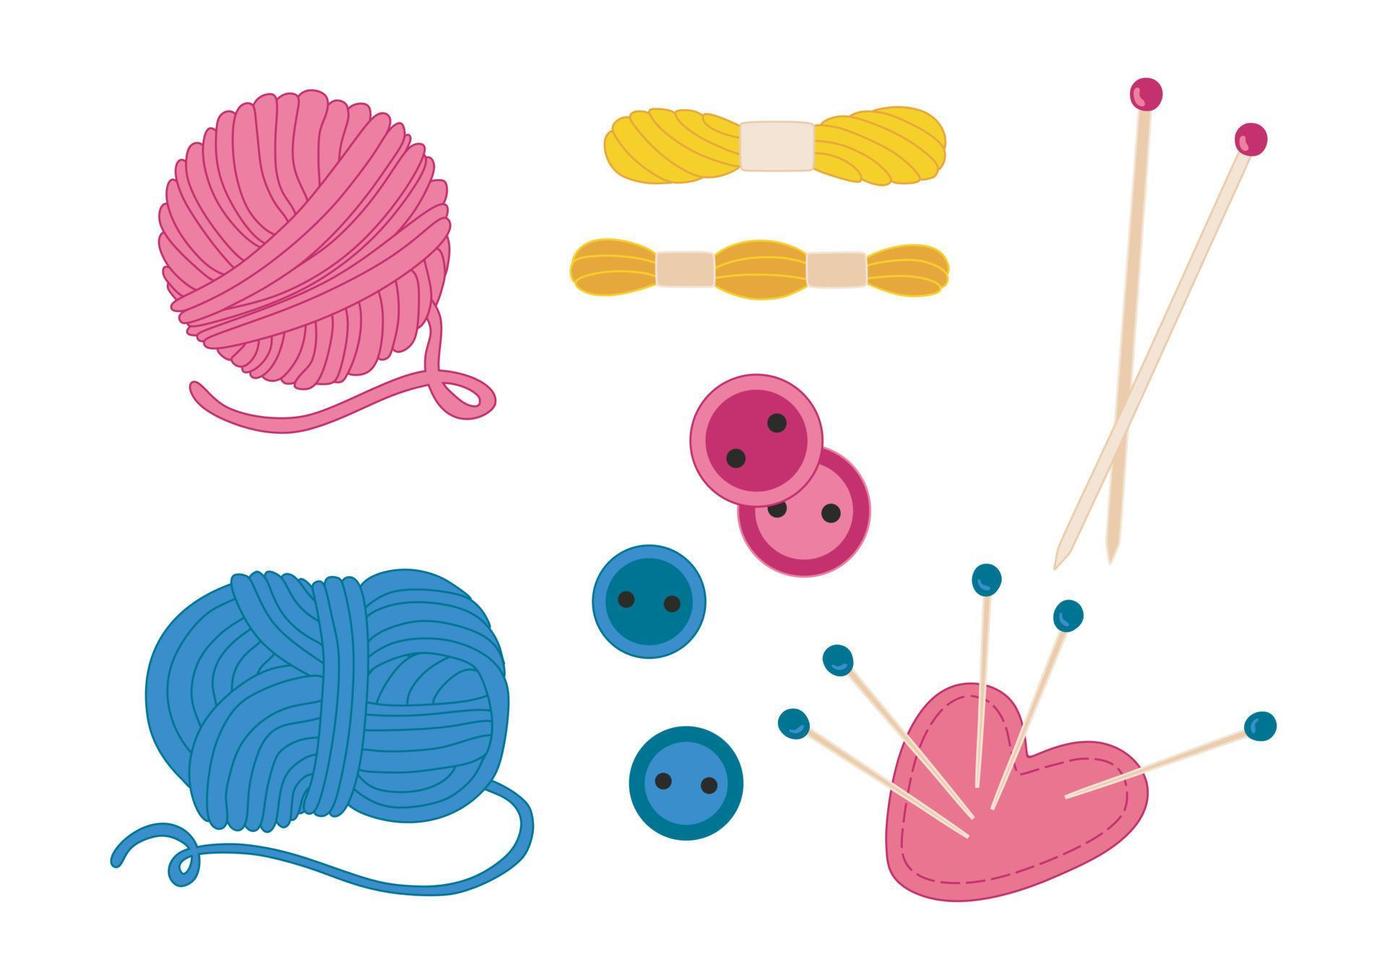 tecknad serie bomull eller ull garn för stickning och korsa sy isolerat vektor illustration samling. ekrar och nålar. kudde för nålar.